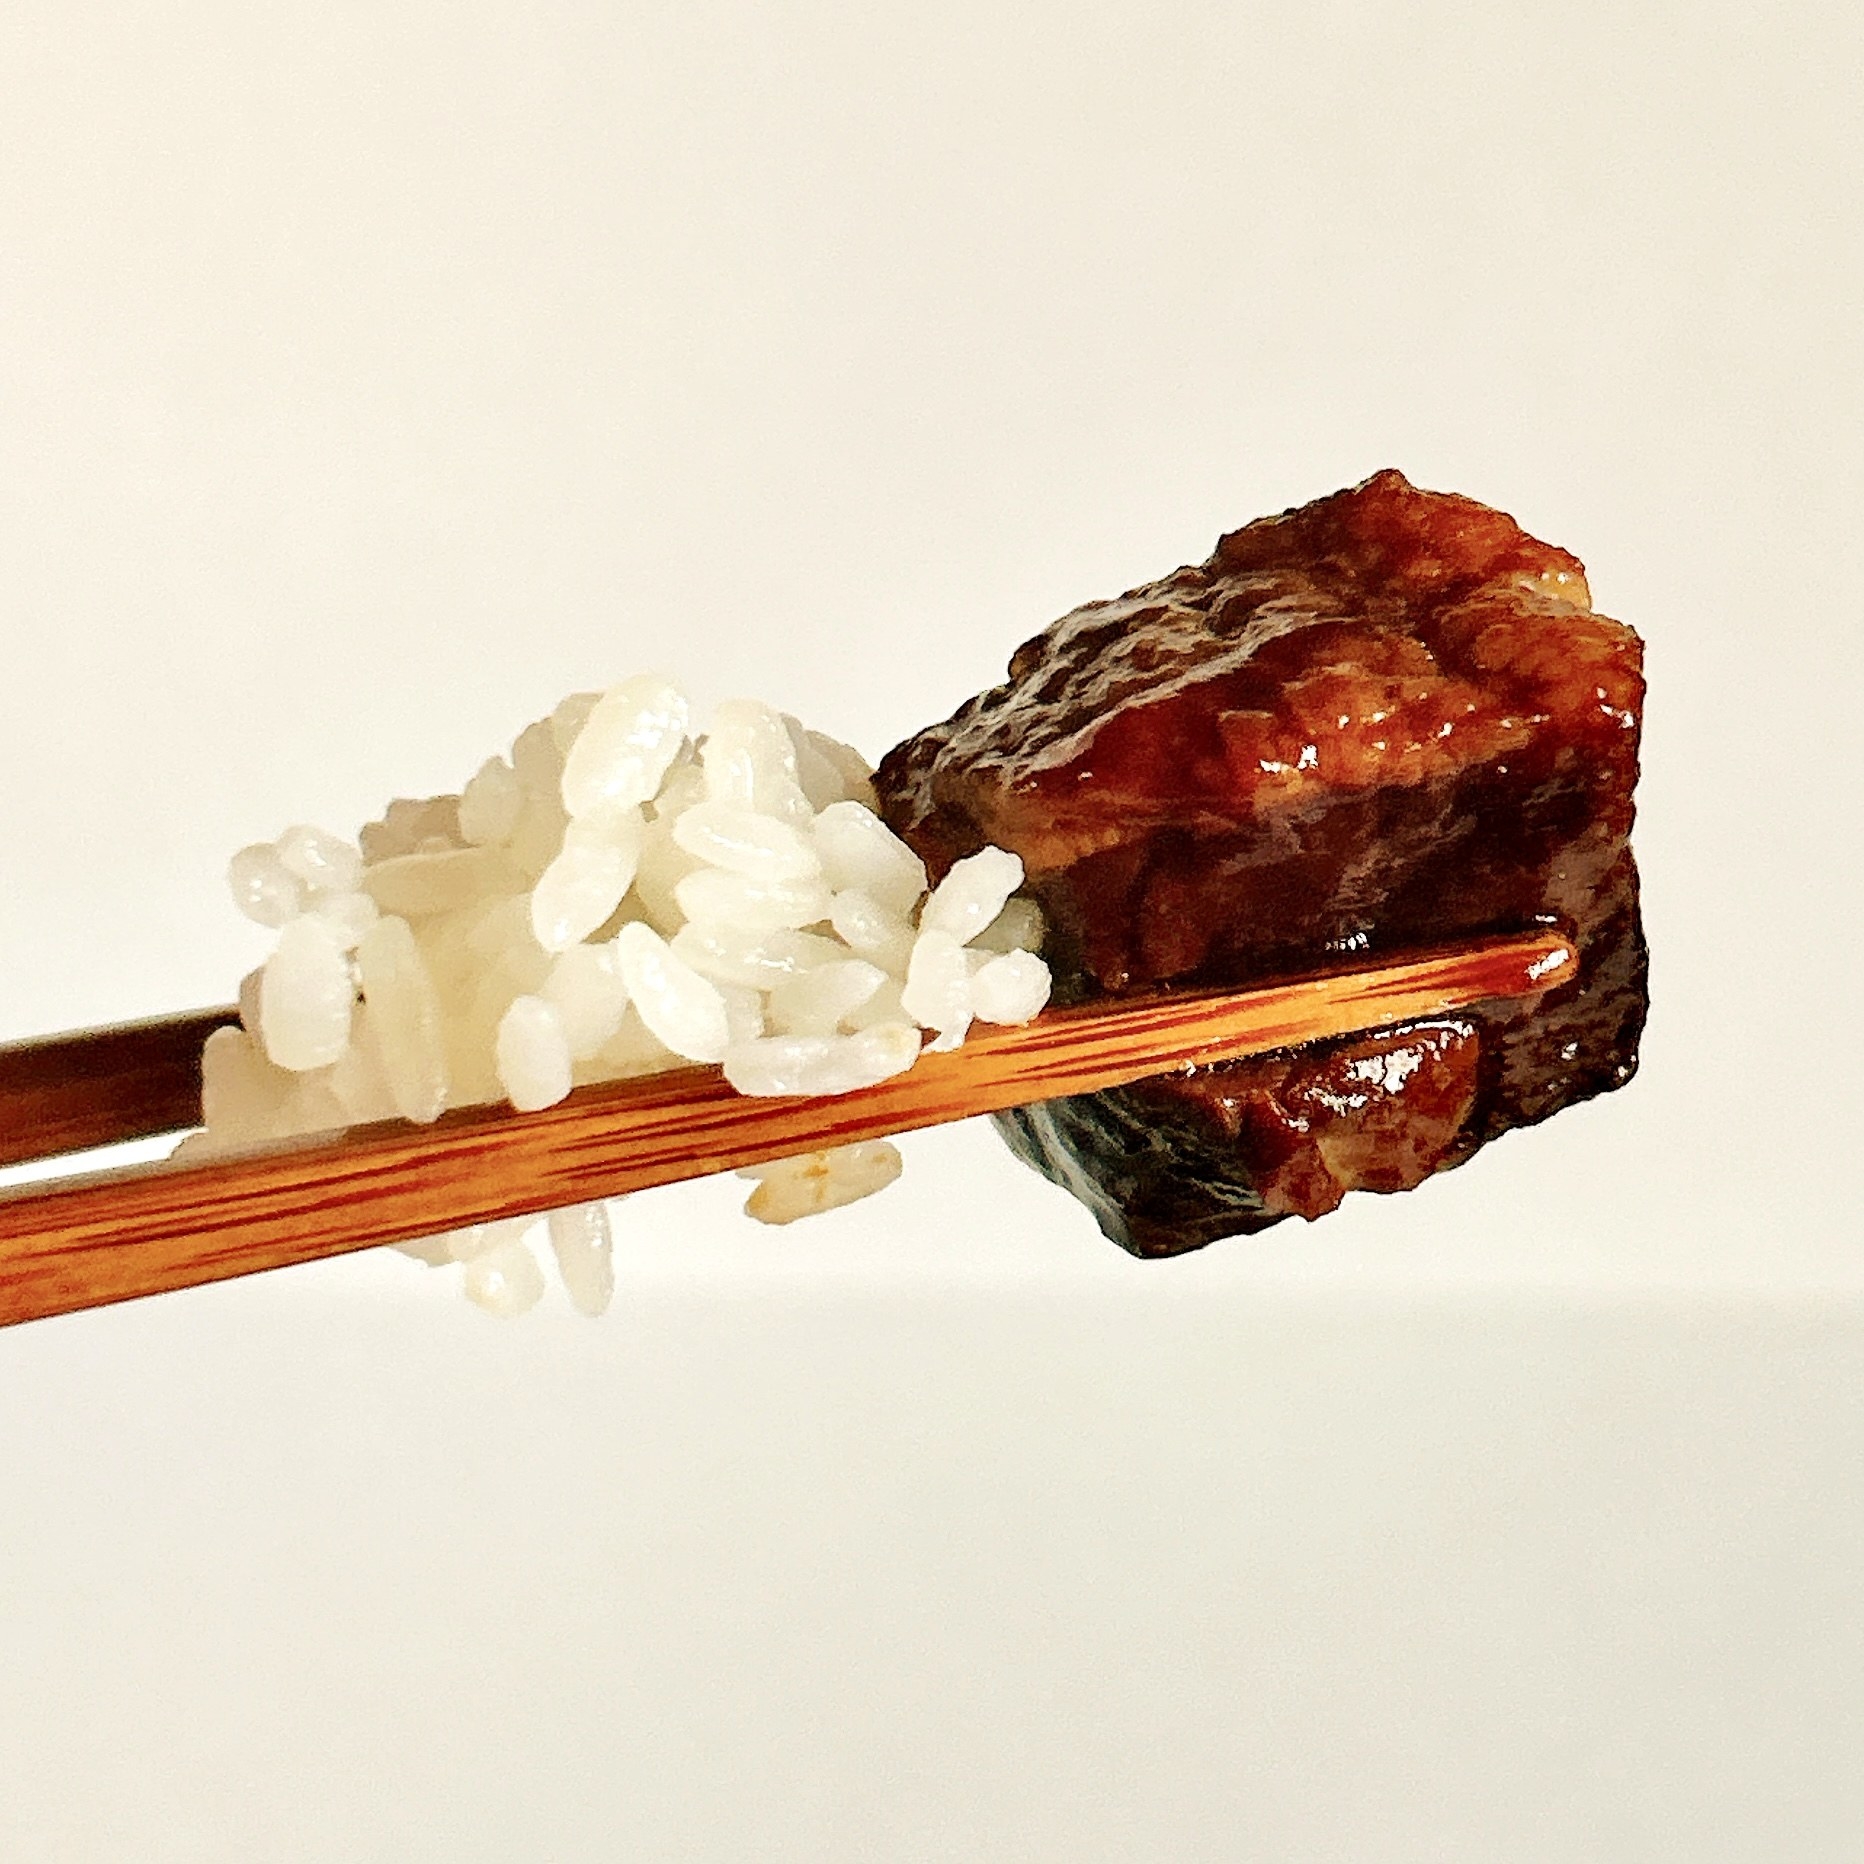 無印良品のオススメのレトルト「世界の煮込み 牛肉の赤ワイン煮」